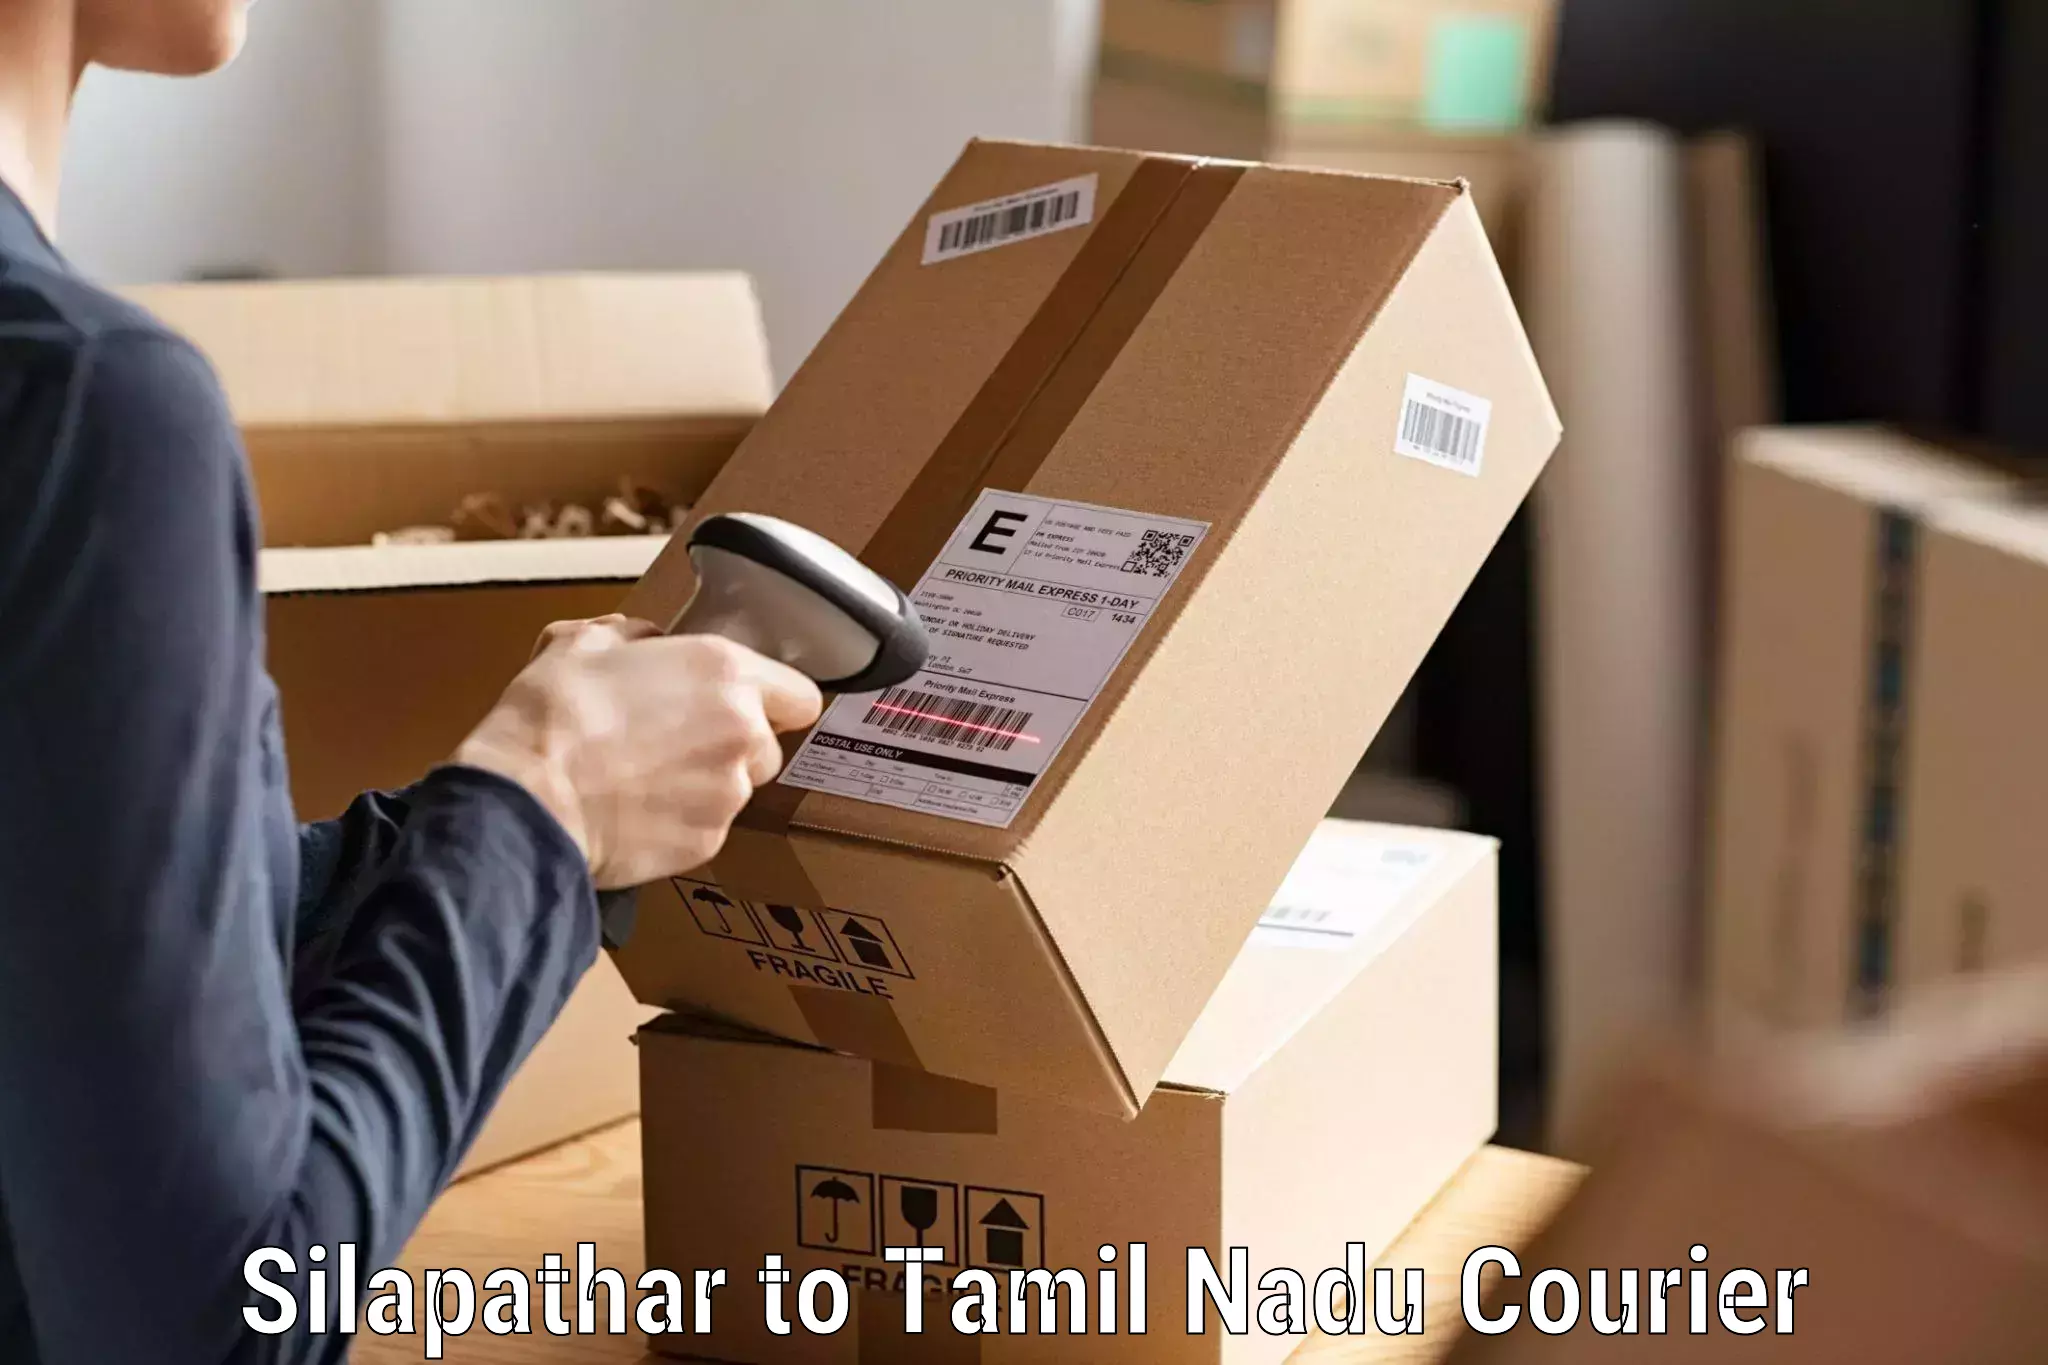 High-capacity shipping options Silapathar to Tamil Nadu